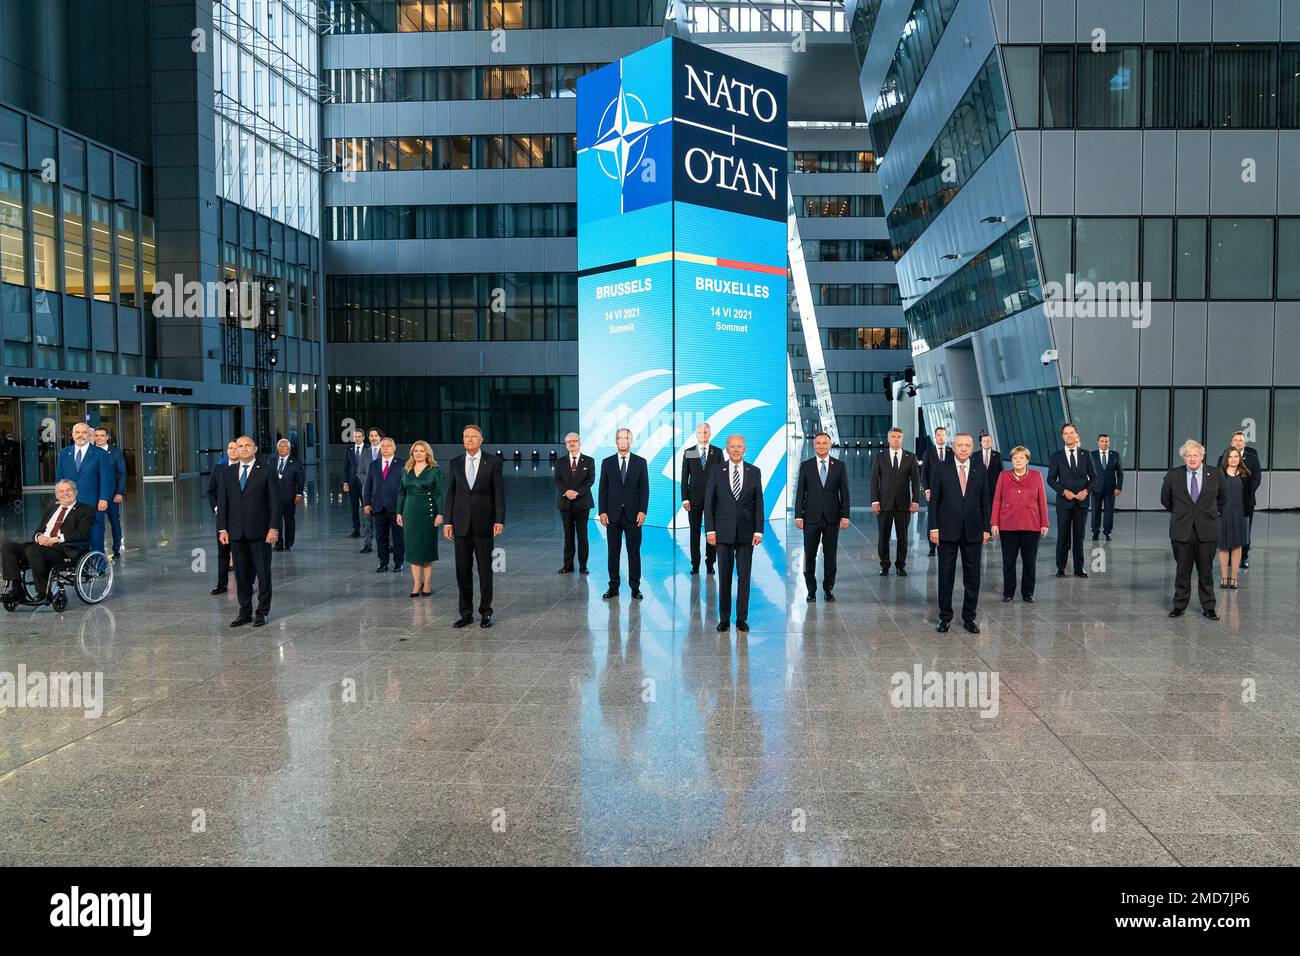 Reportage: Le Président Joe Biden pose lundi une photo de groupe aux dirigeants de l'OTAN, à 14 juin 2021, au siège de l'OTAN à Bruxelles Banque D'Images